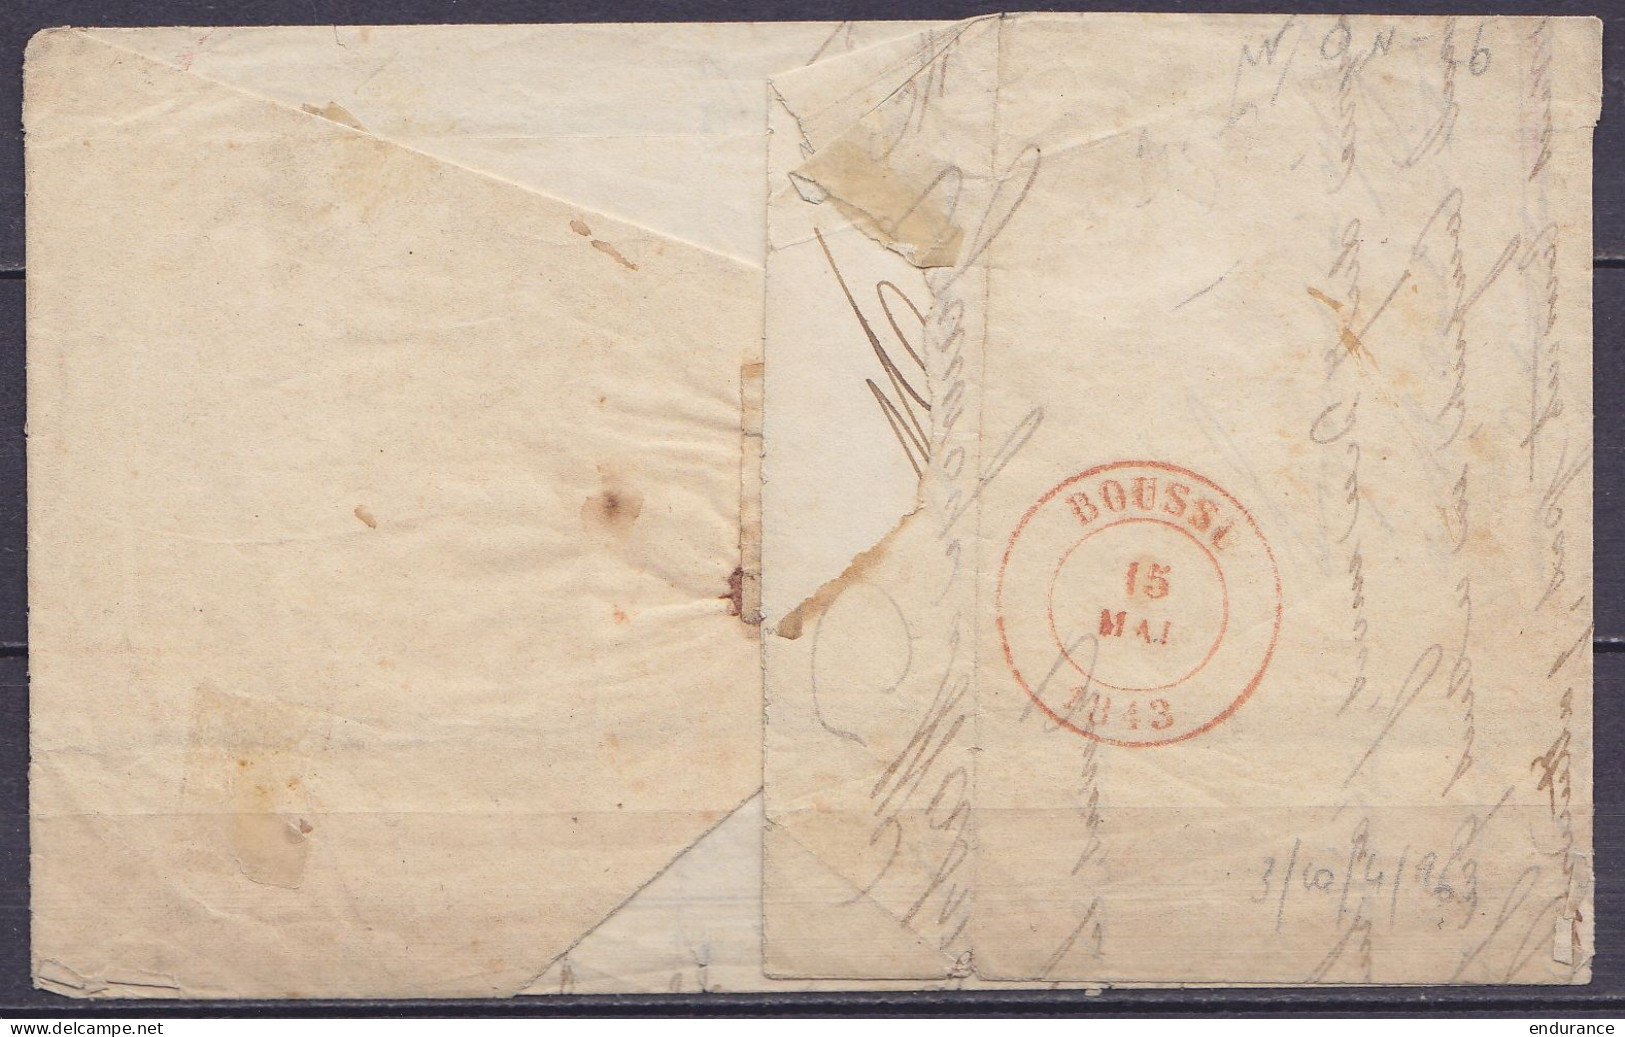 L. Càd MONS /15 MAI 1843 Pour WASMES - [SR] - Boîte Rurale "D" (au Dos: Càd Arrivée BOUSSU) - 1830-1849 (Independent Belgium)